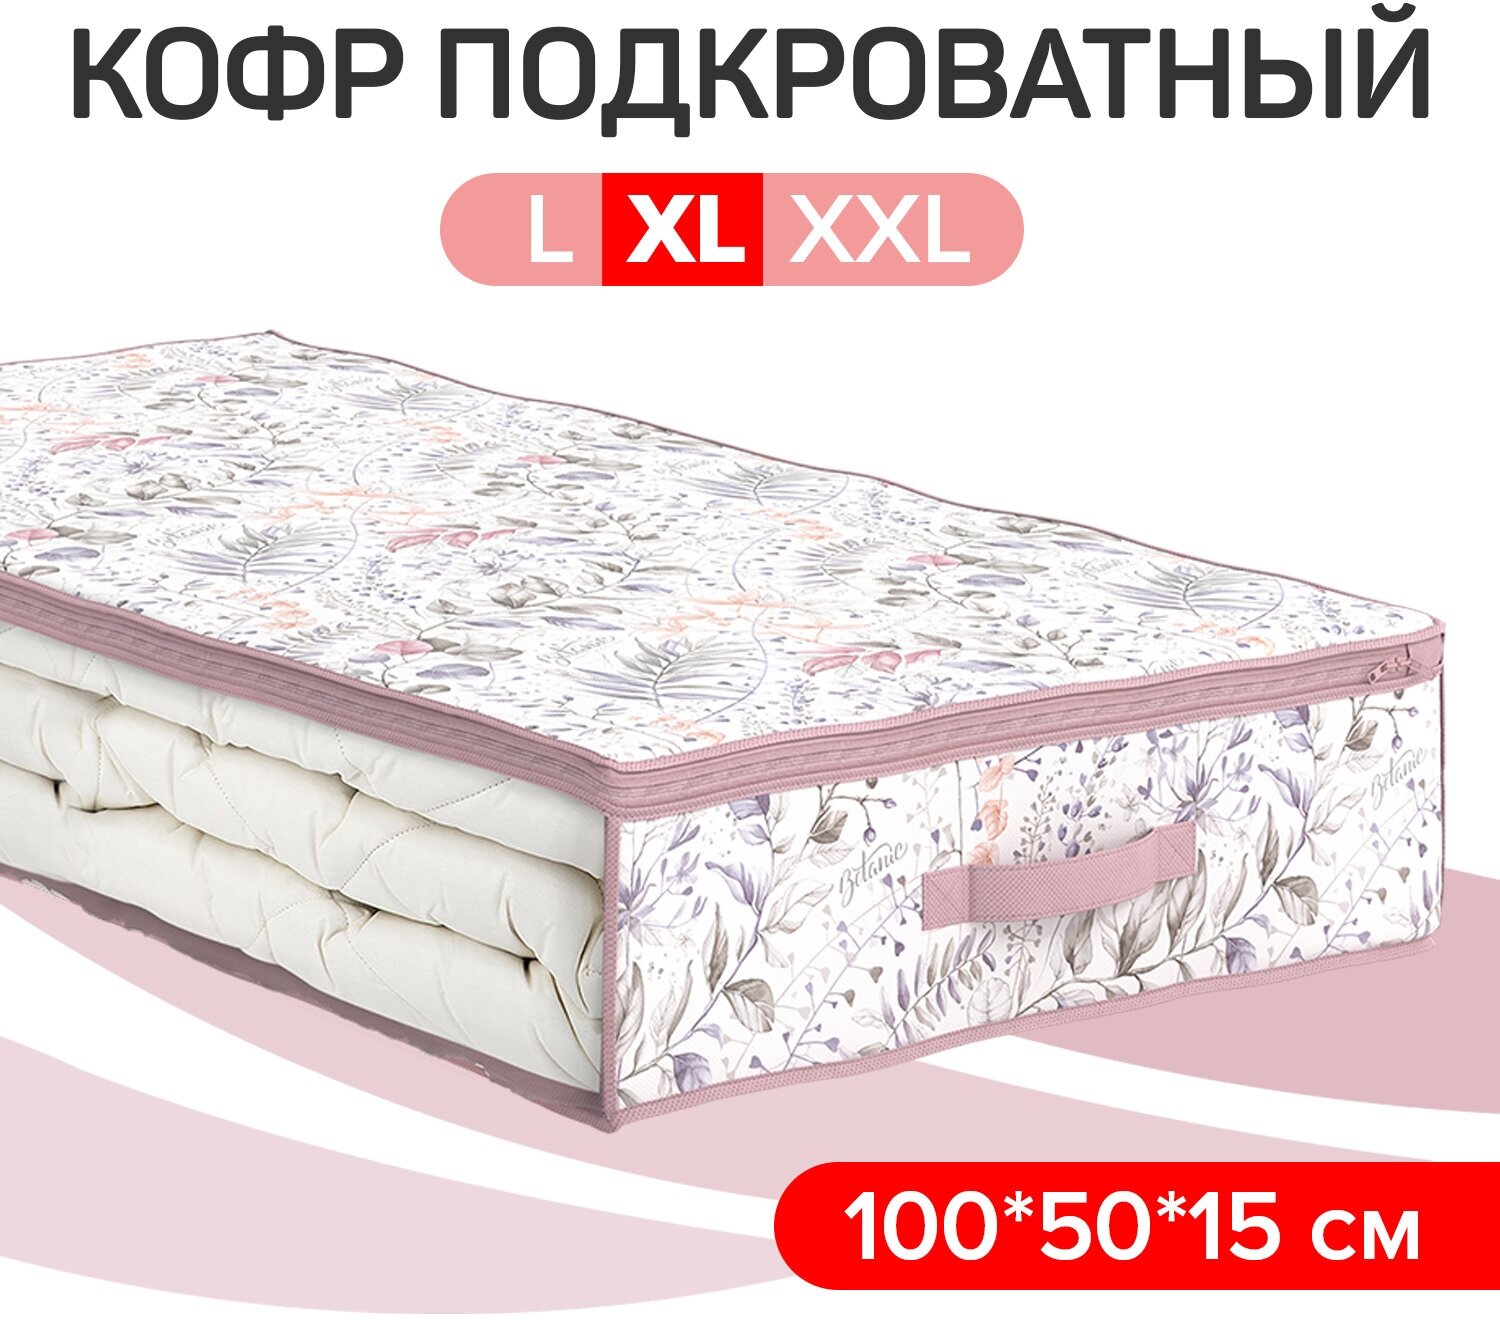 Кофр для хранения подкроватный, 100*50*15 см, BOTANIC LILAC